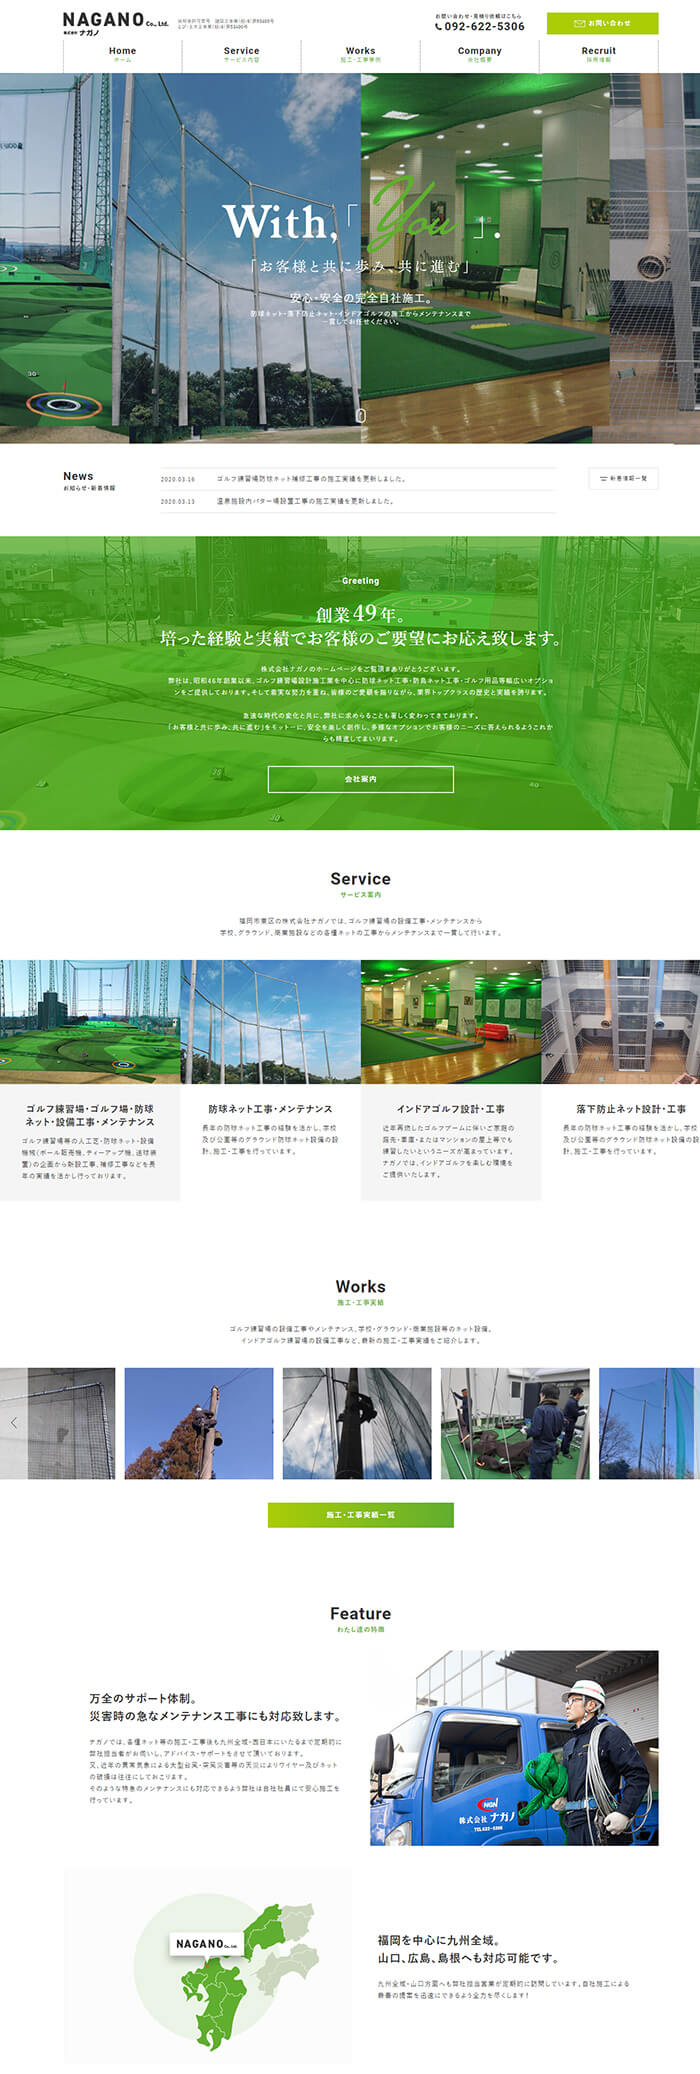 株式会社 ナガノ様 ホームページリニューアル制作実績 デスクトップイメージ